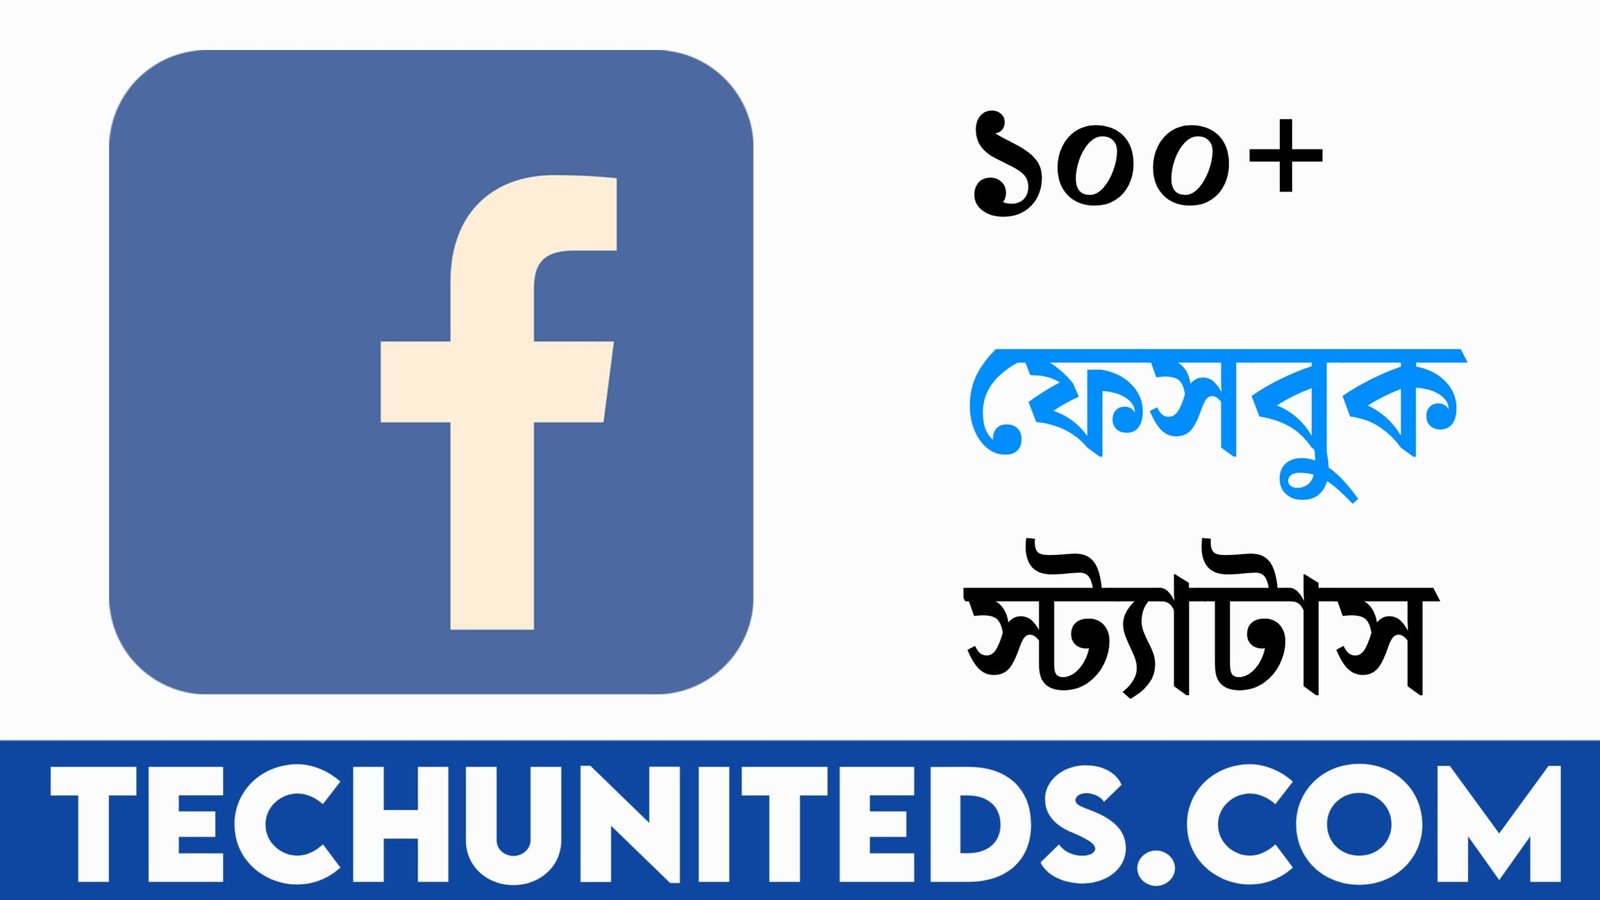 ১০০+ ফেসবুক স্ট্যাটাস | facebook status bangla